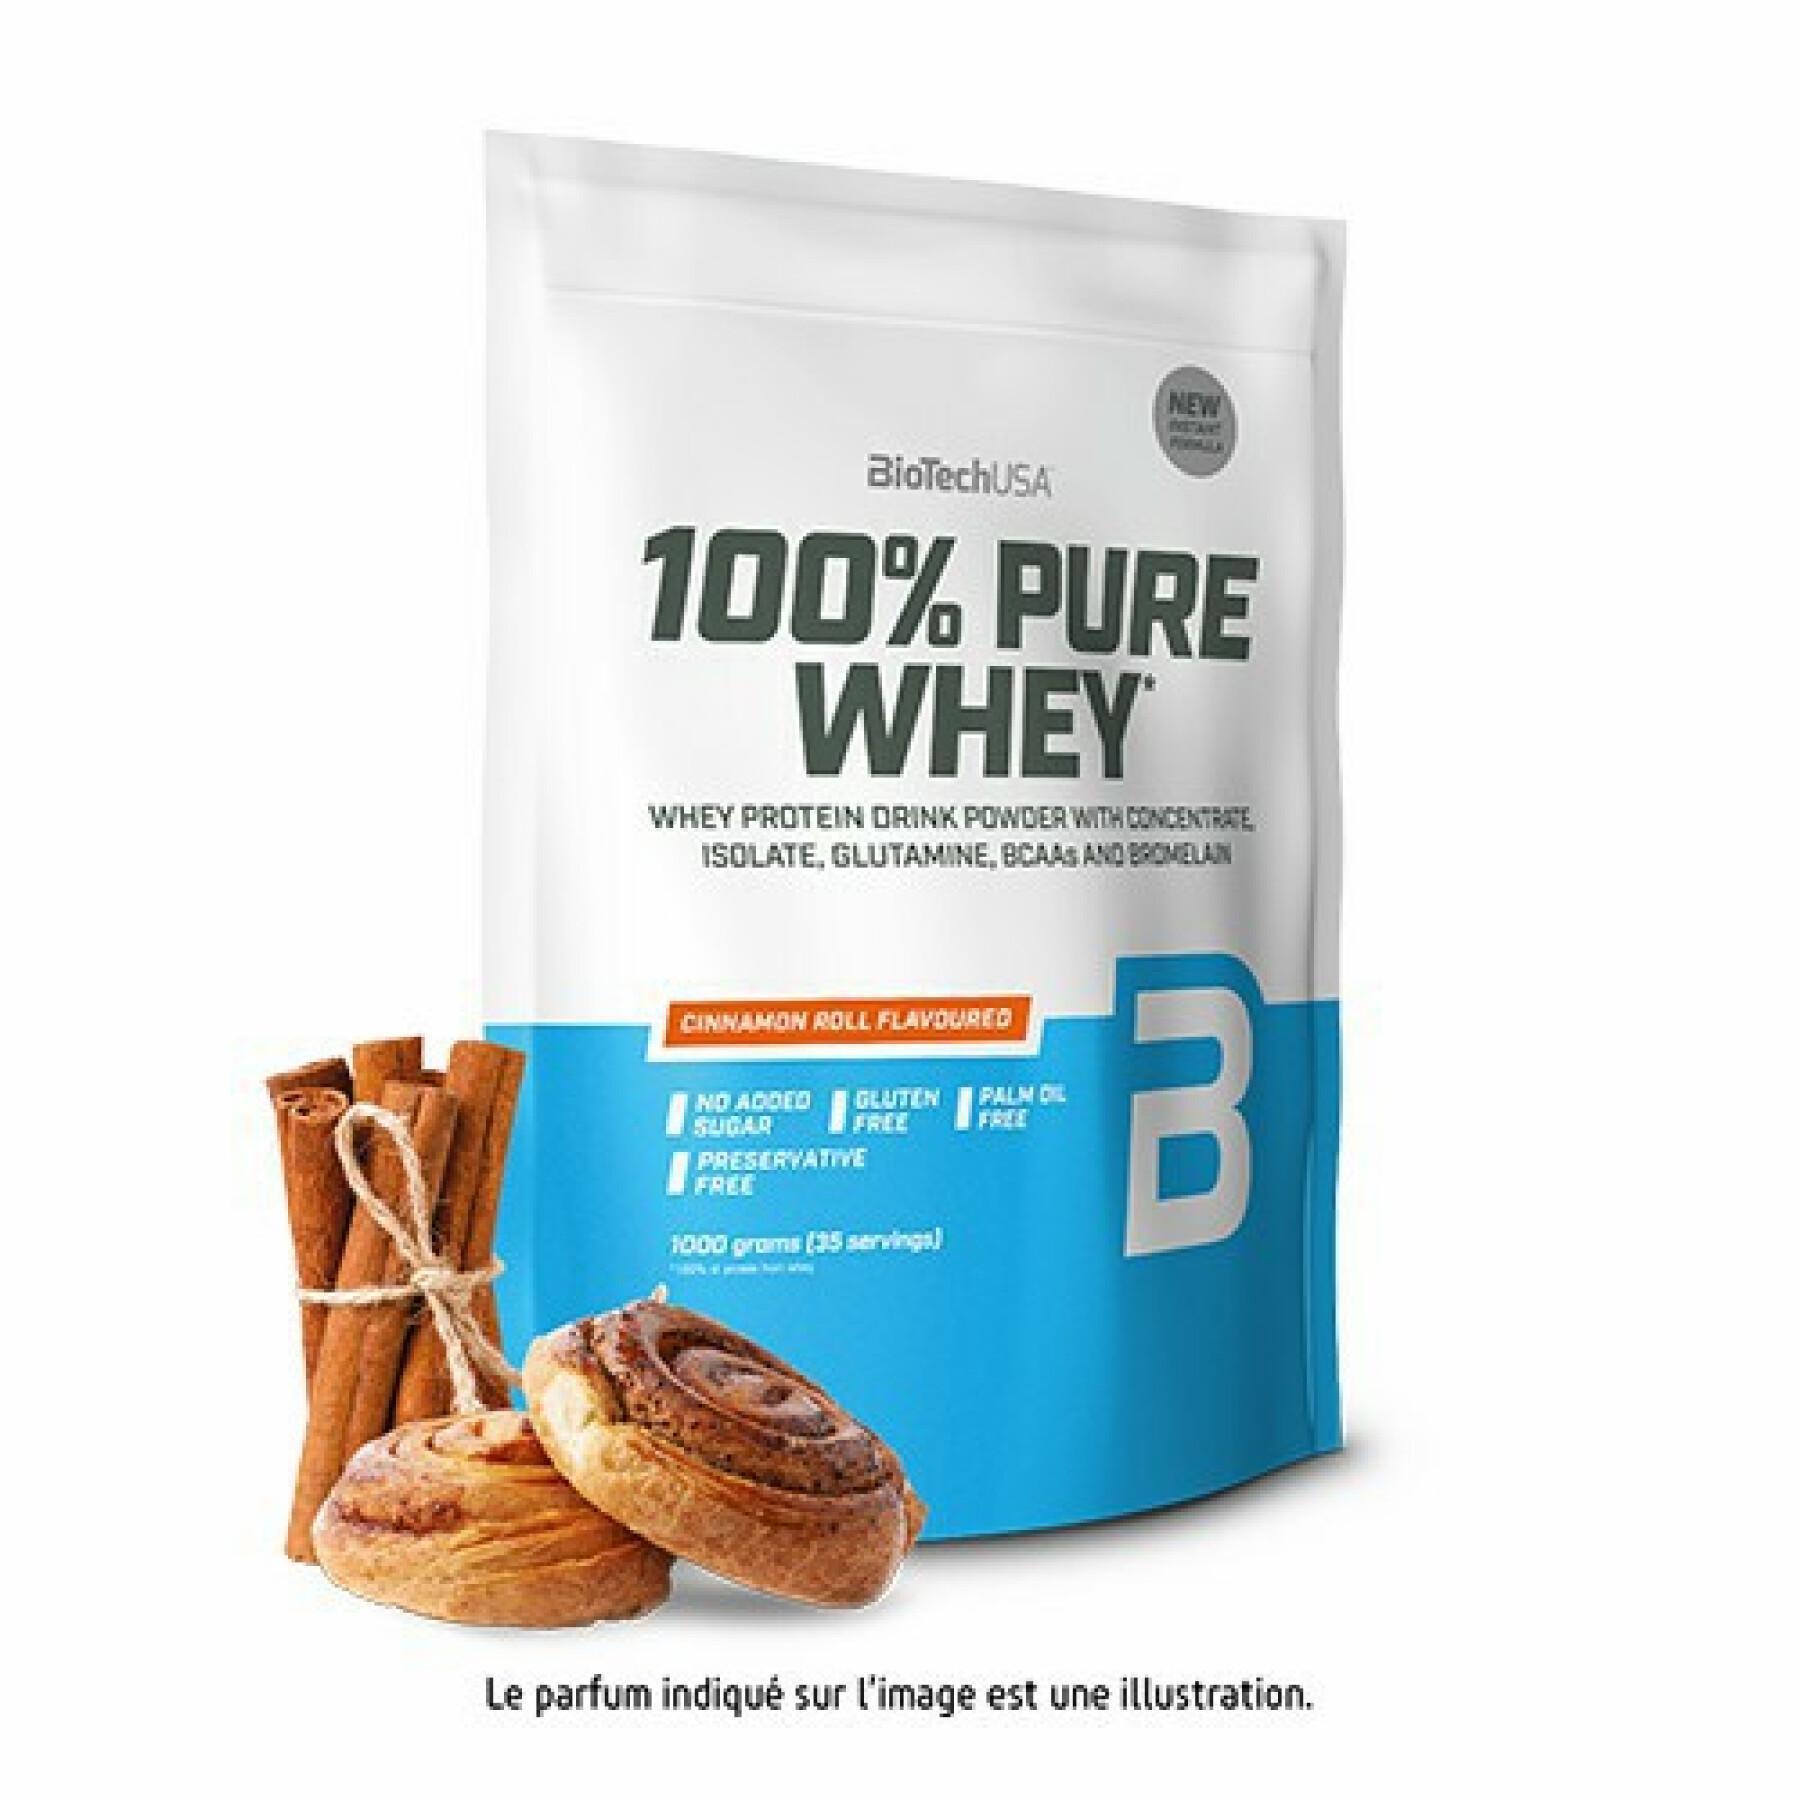 Sacs de protéines 100% pure whey Biotech USA - Black Biscuit - 1kg (x10)